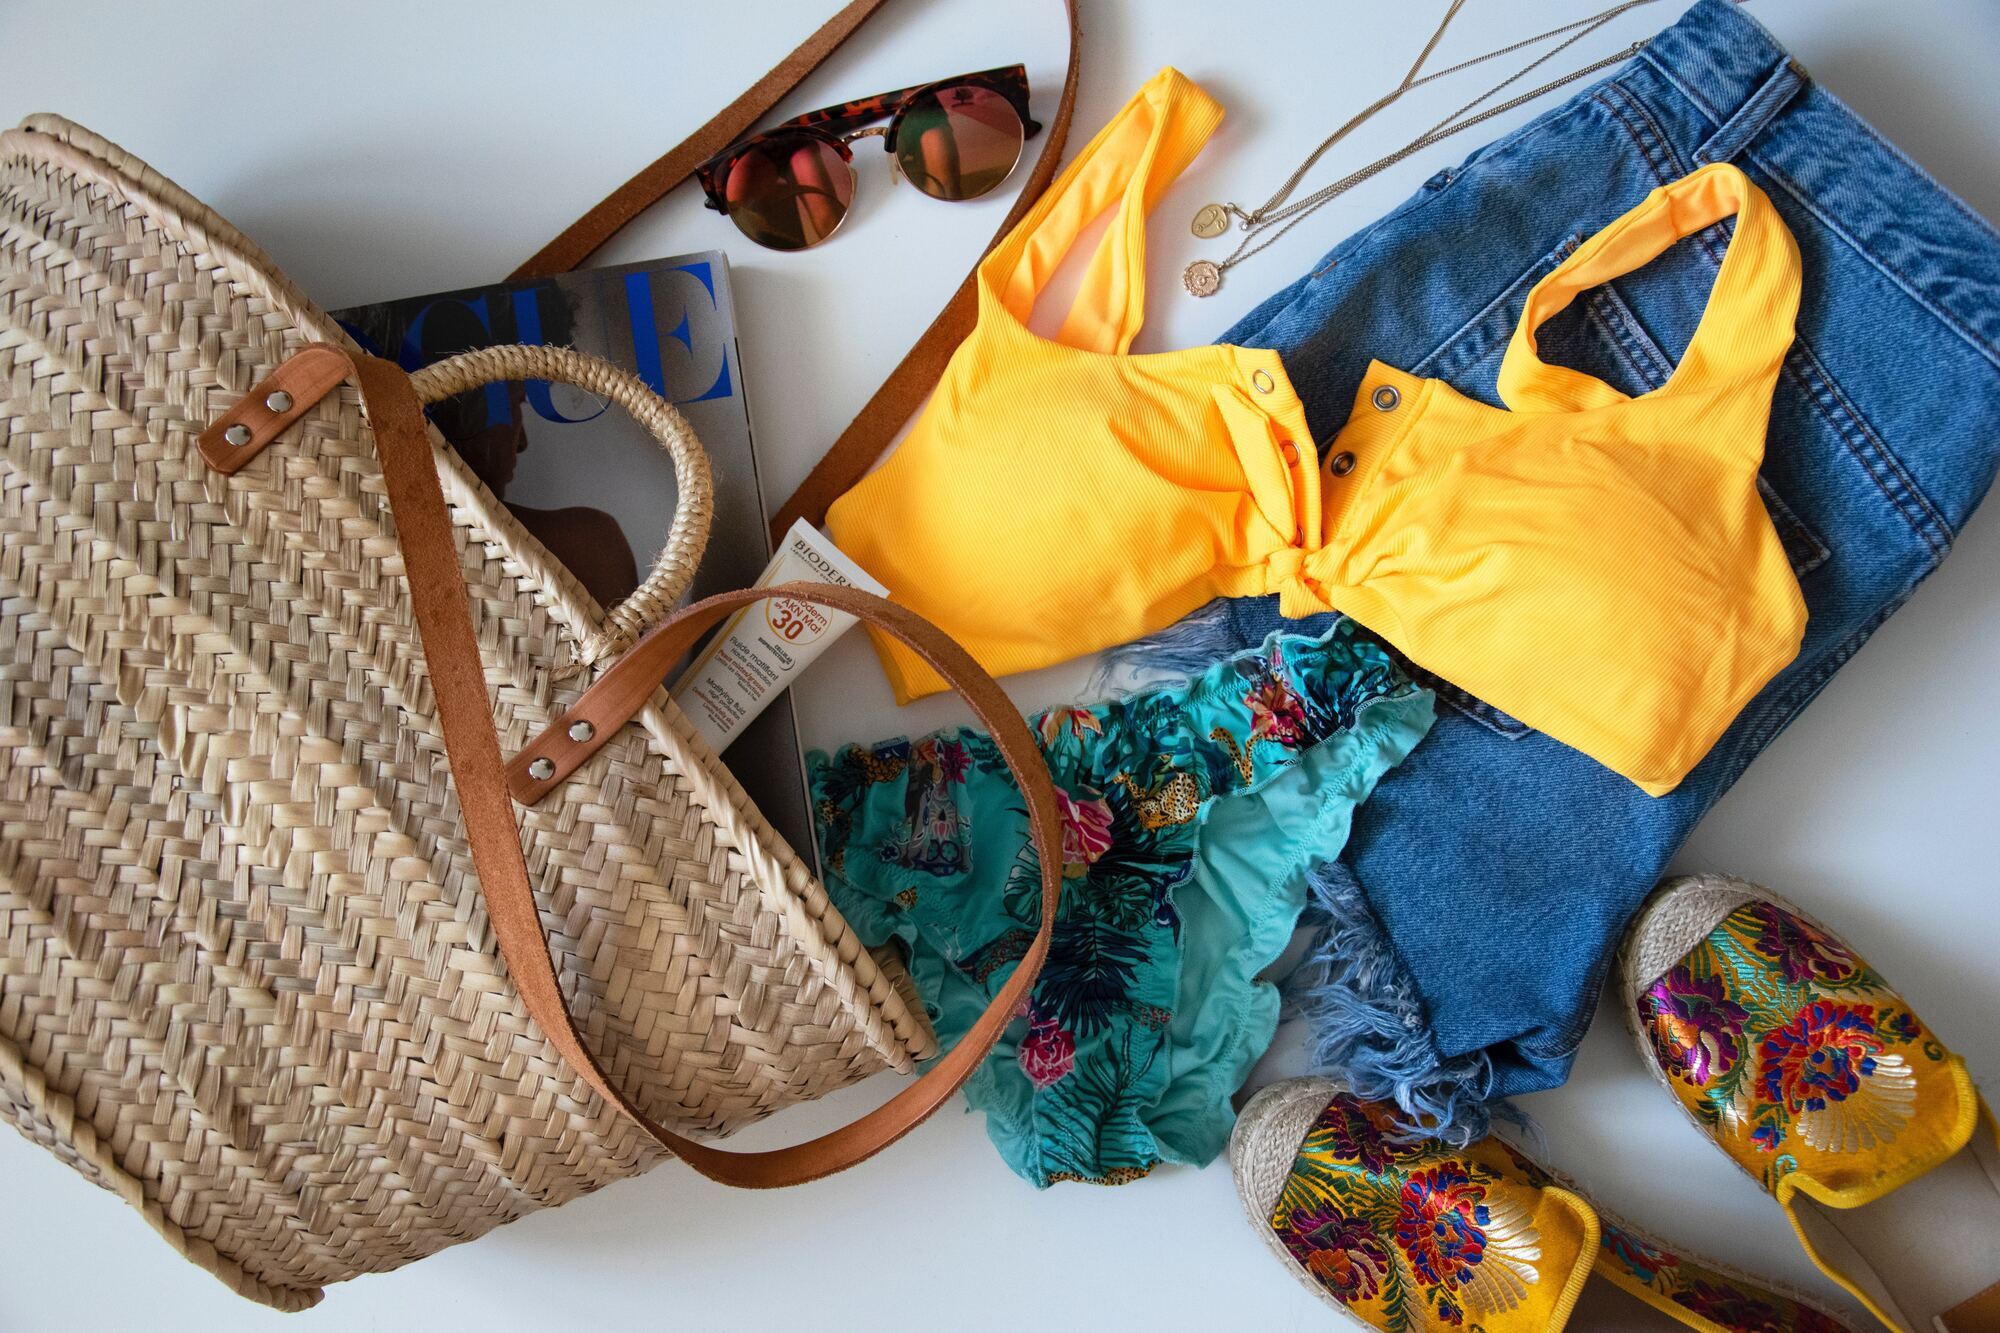 Як зібрати речі для пляжного відпочинку: що обов’язково має бути у валізі